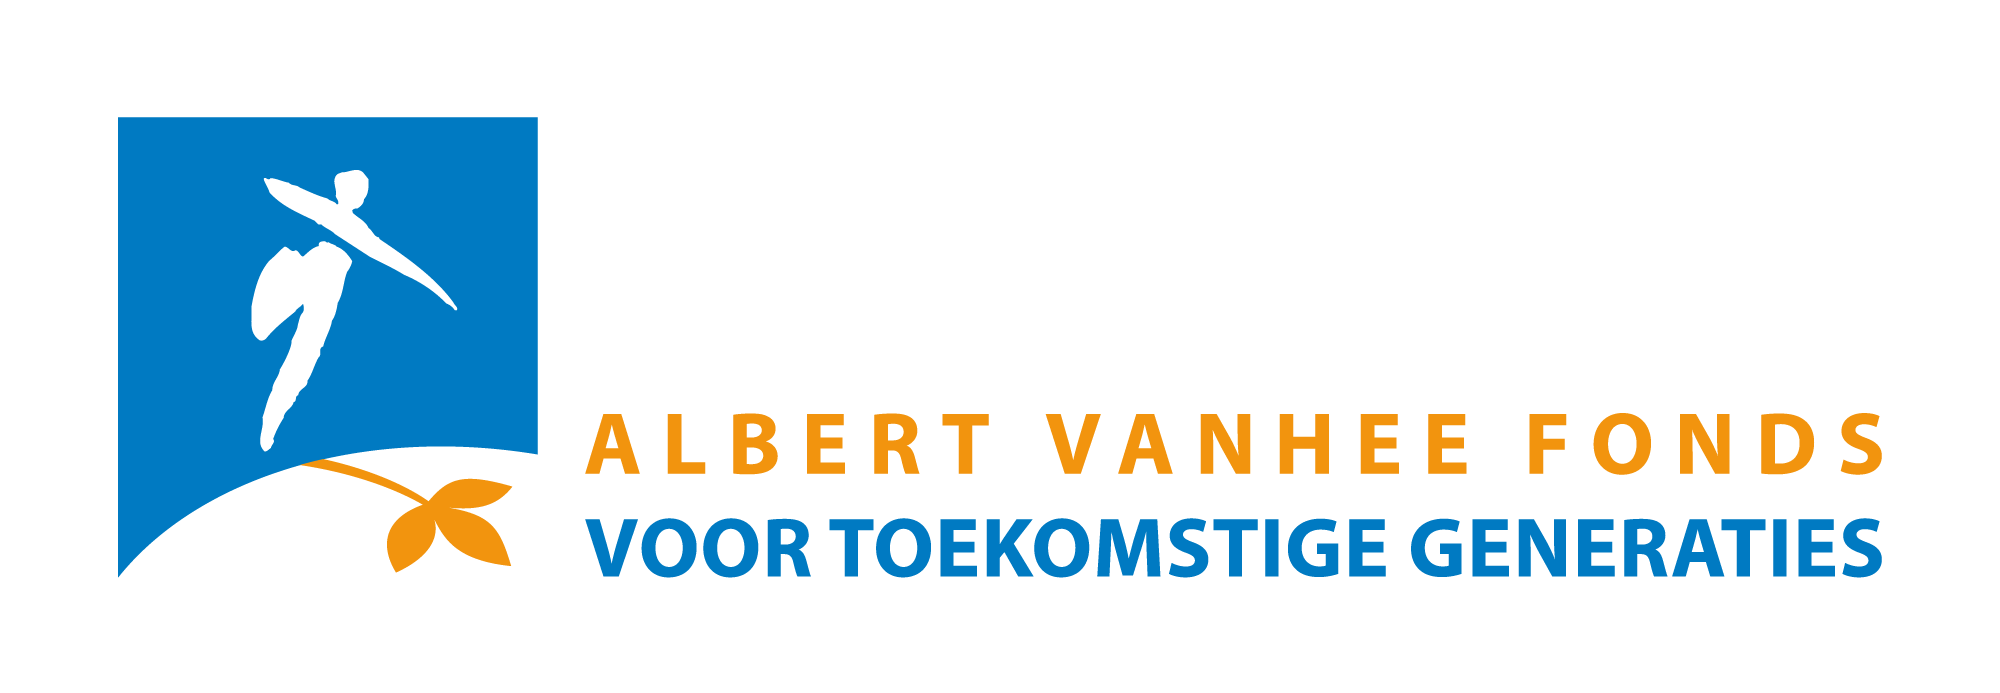 Logo Albert Vanhee Fonds voor Toekomstige Generaties